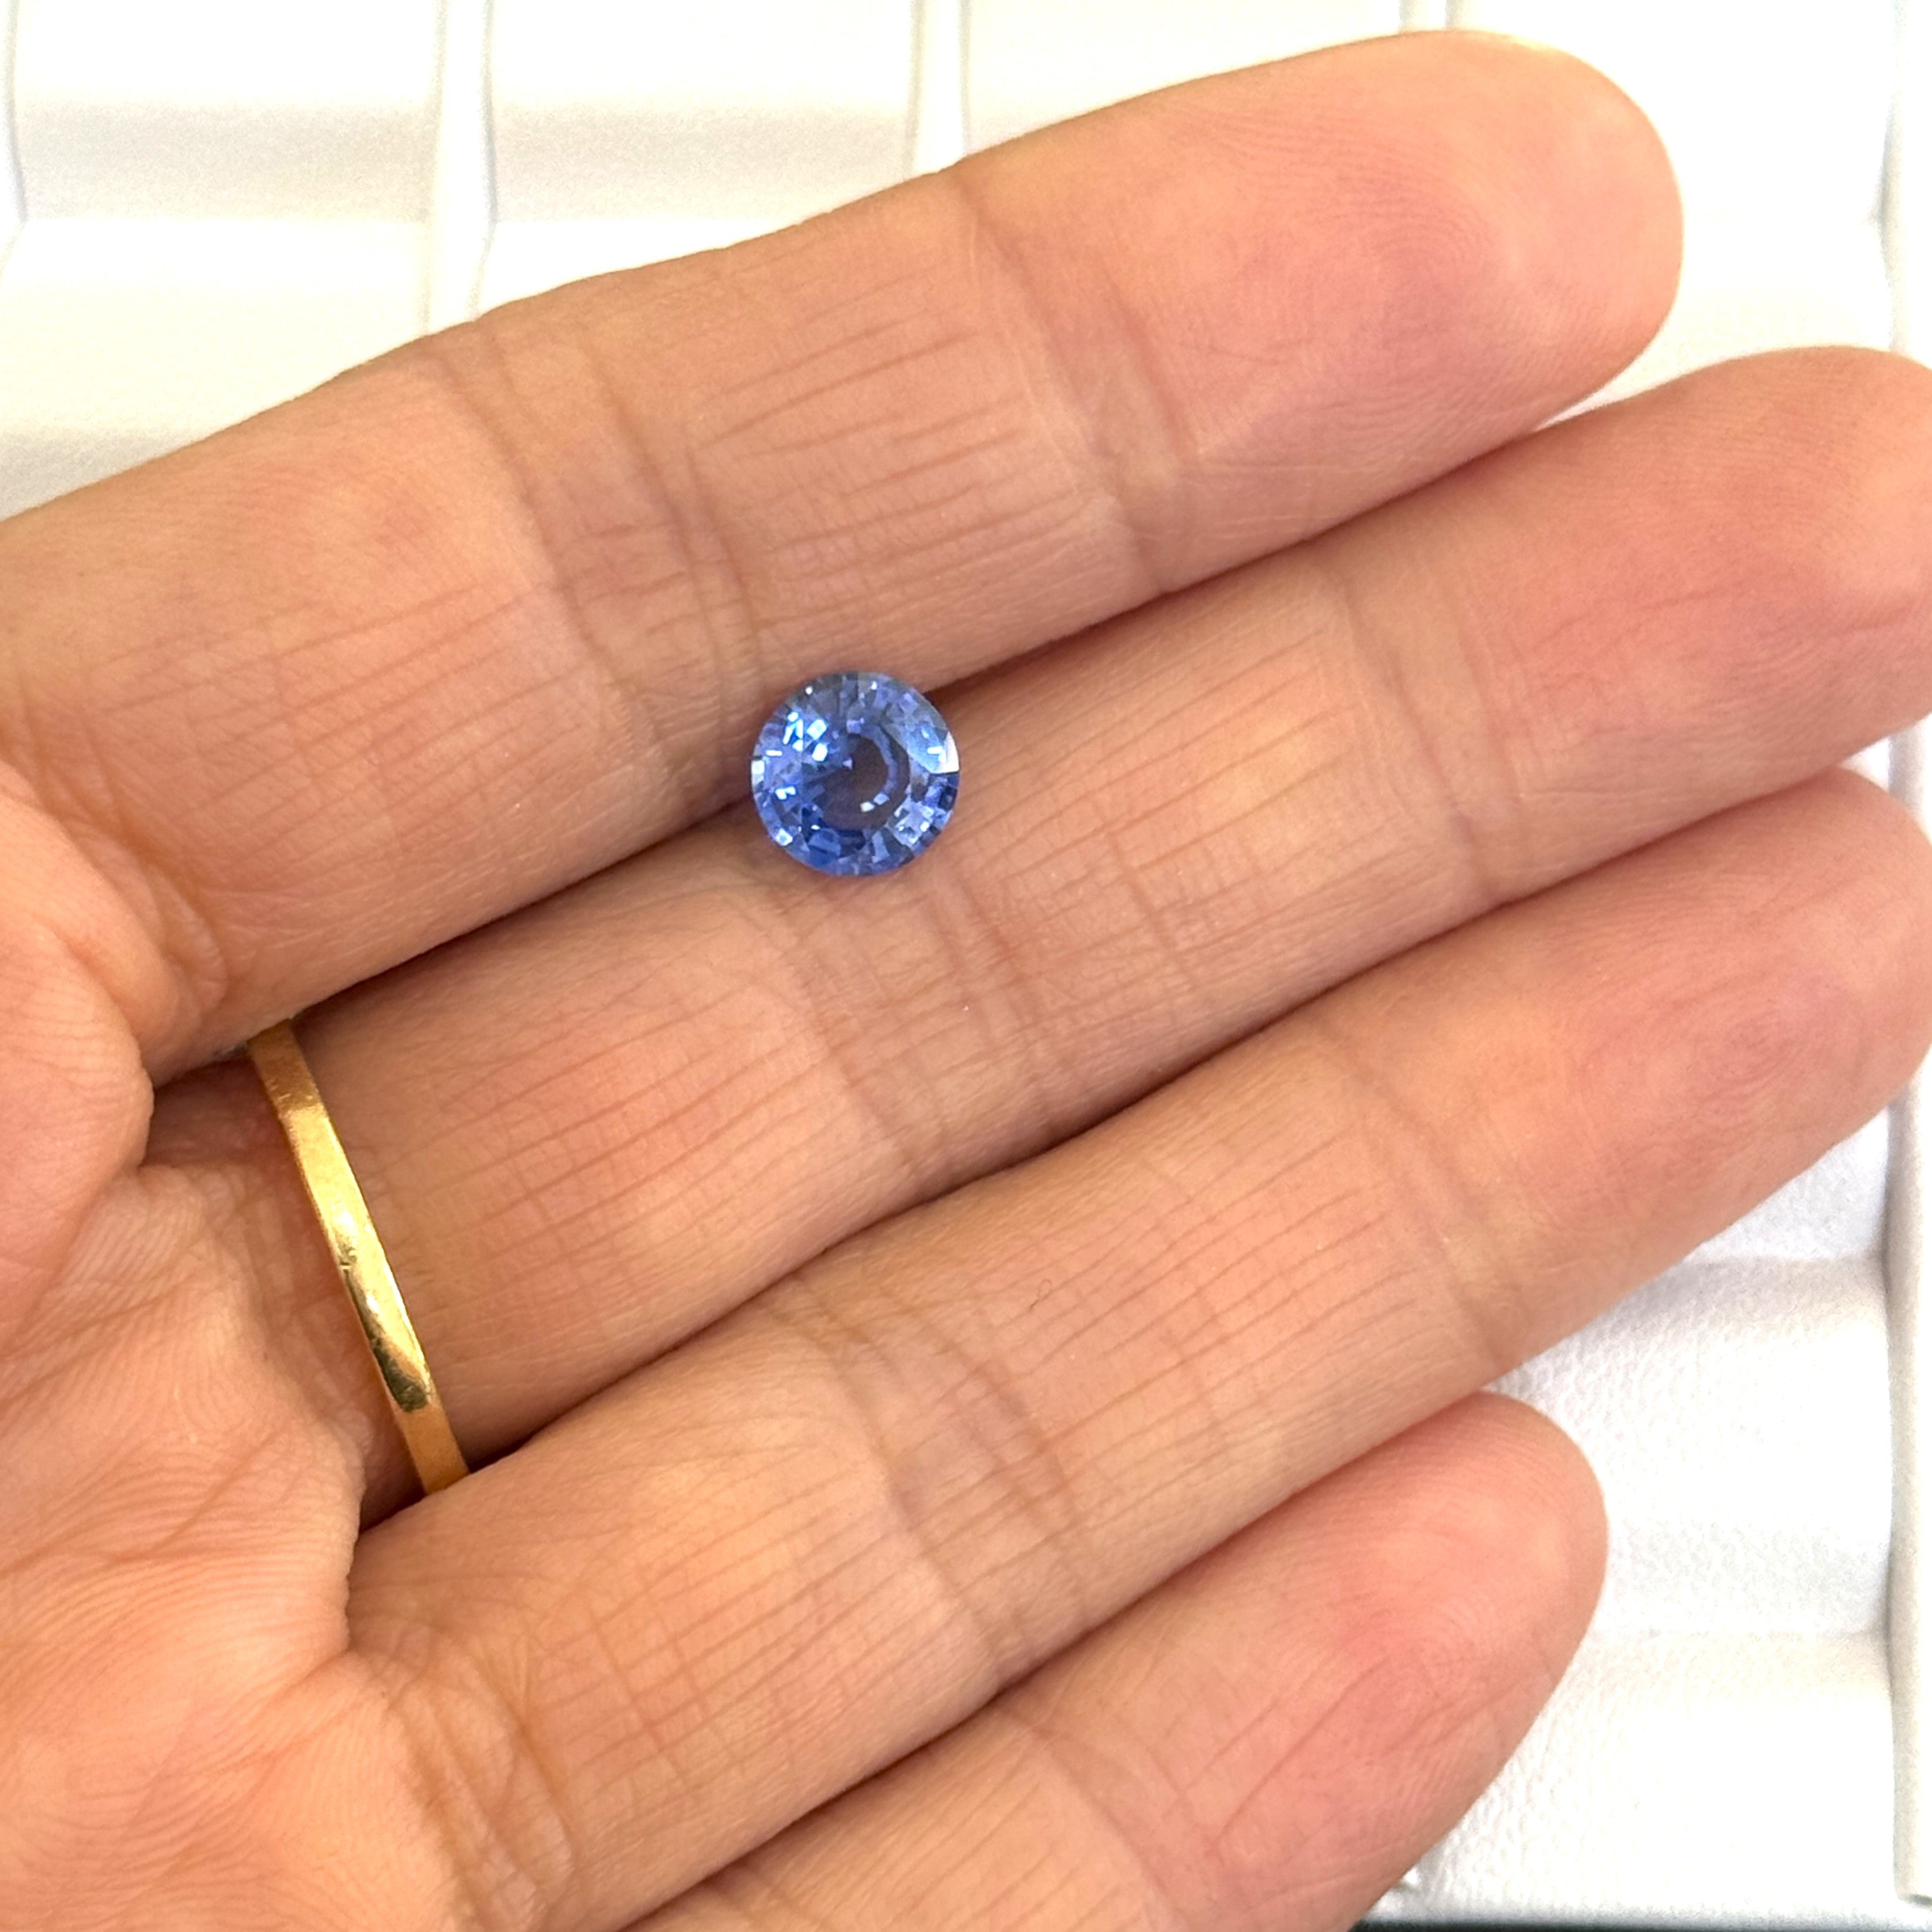 Blue Sapphire 1.41ct Round